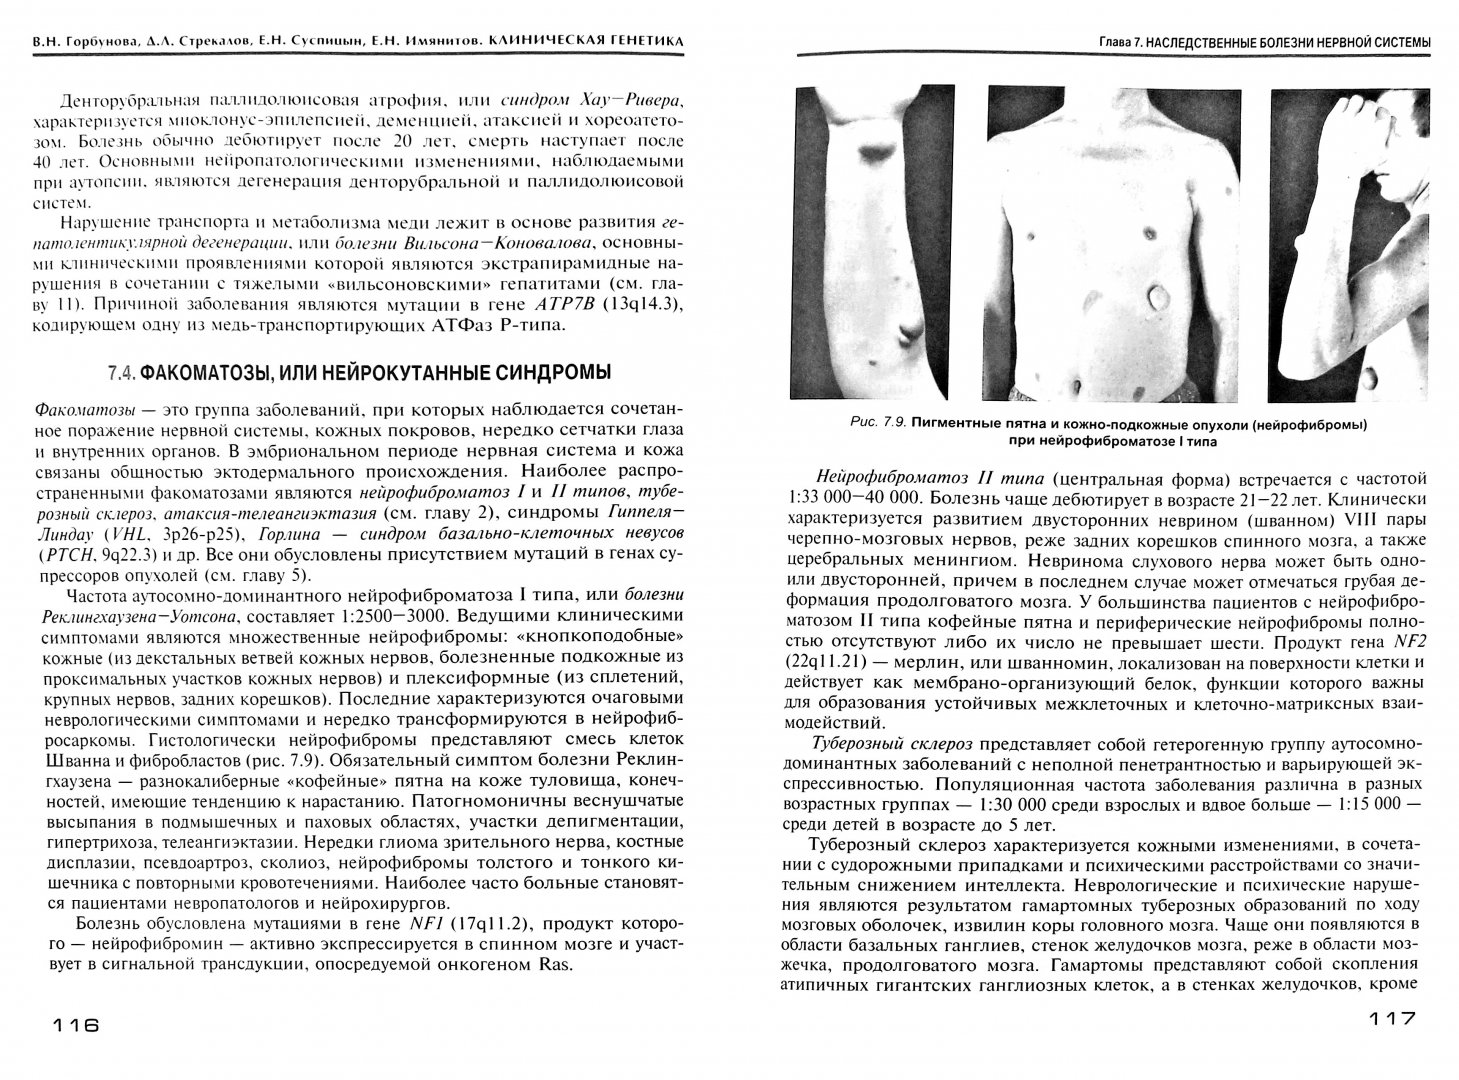 Иллюстрация 1 из 14 для Клиническая генетика. Учебник - Горбунова, Стрекалов, Суспицын, Имянитов | Лабиринт - книги. Источник: Лабиринт